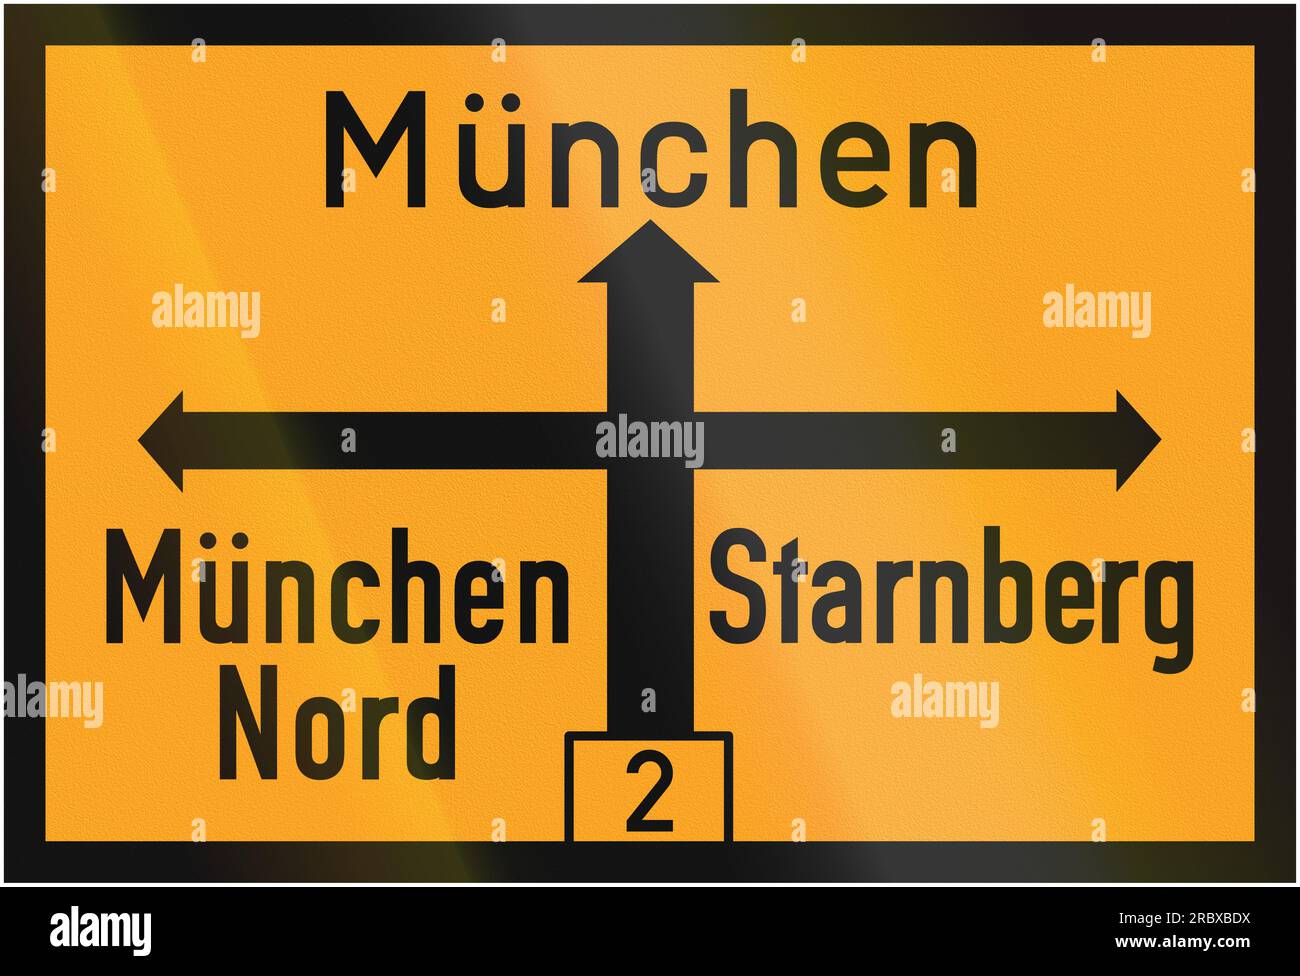 Ancien dessin (1936) d'un panneau de direction allemand sur une route fédérale montrant le chemin vers Munich et Starnberg. Nord signifie nord. Banque D'Images